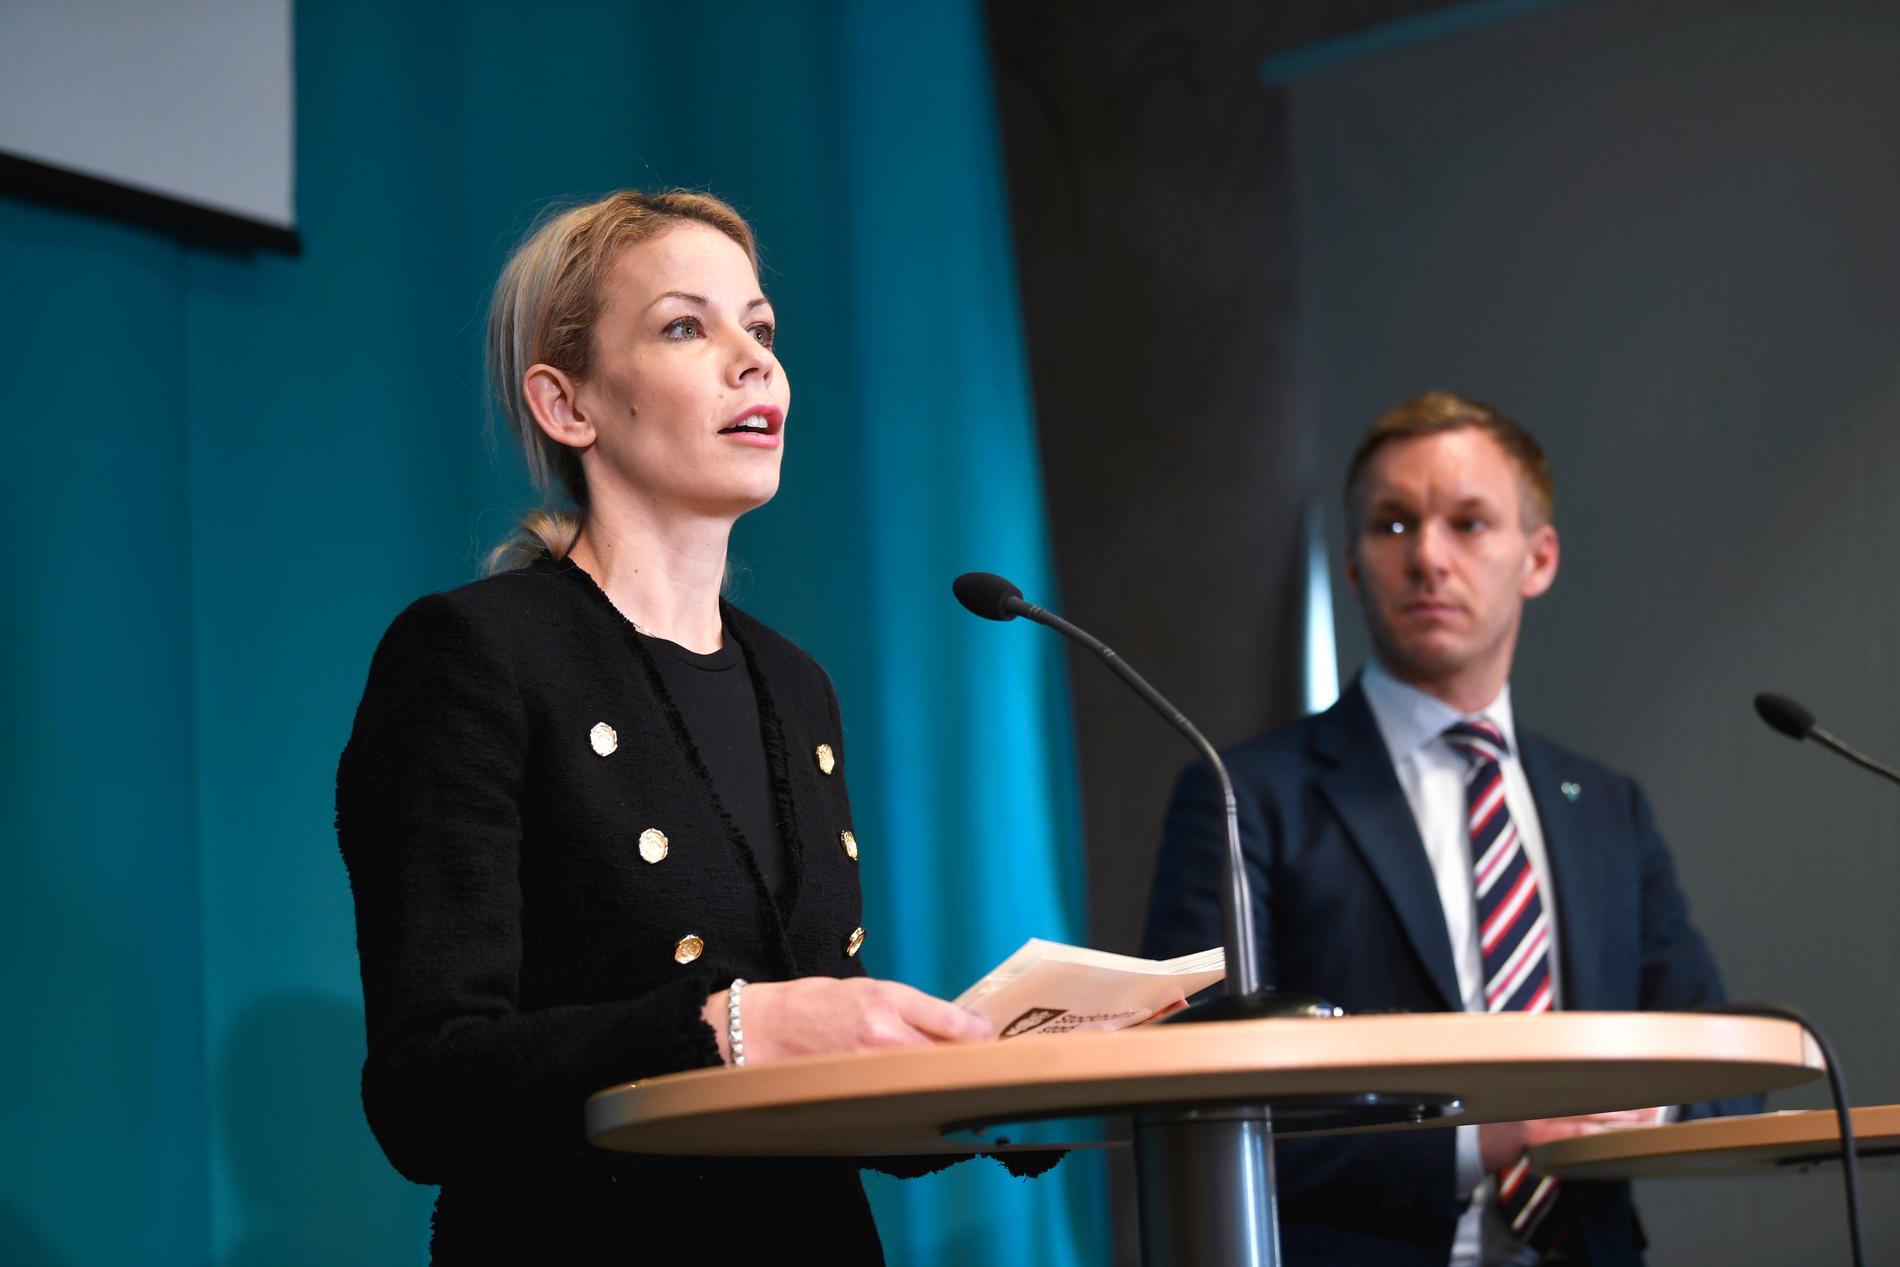 Stockholm stad har fattat beslut om att ta fram en ny vårdmodell, meddelar finansborgarrådet Anna König Jerlmyr (M) och äldre- och trygghetsborgarrådet Erik Slottner (KD) på en pressträff i Stadshuset.